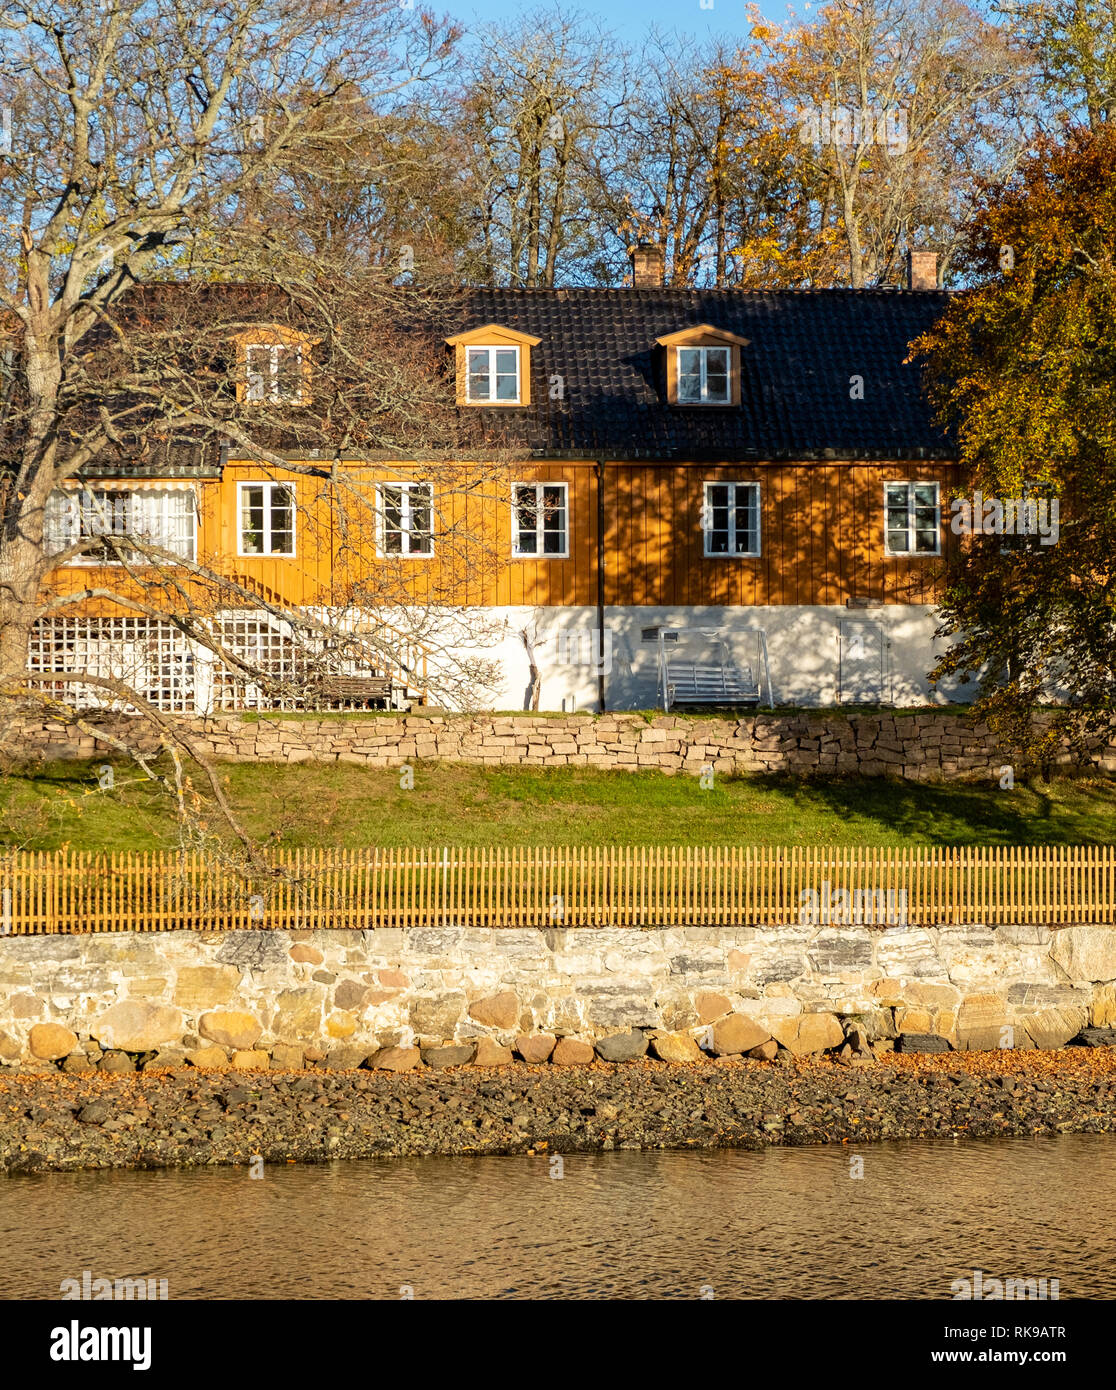 Noruego de madera antigua villa a orillas del fiordo de Oslo Foto de stock